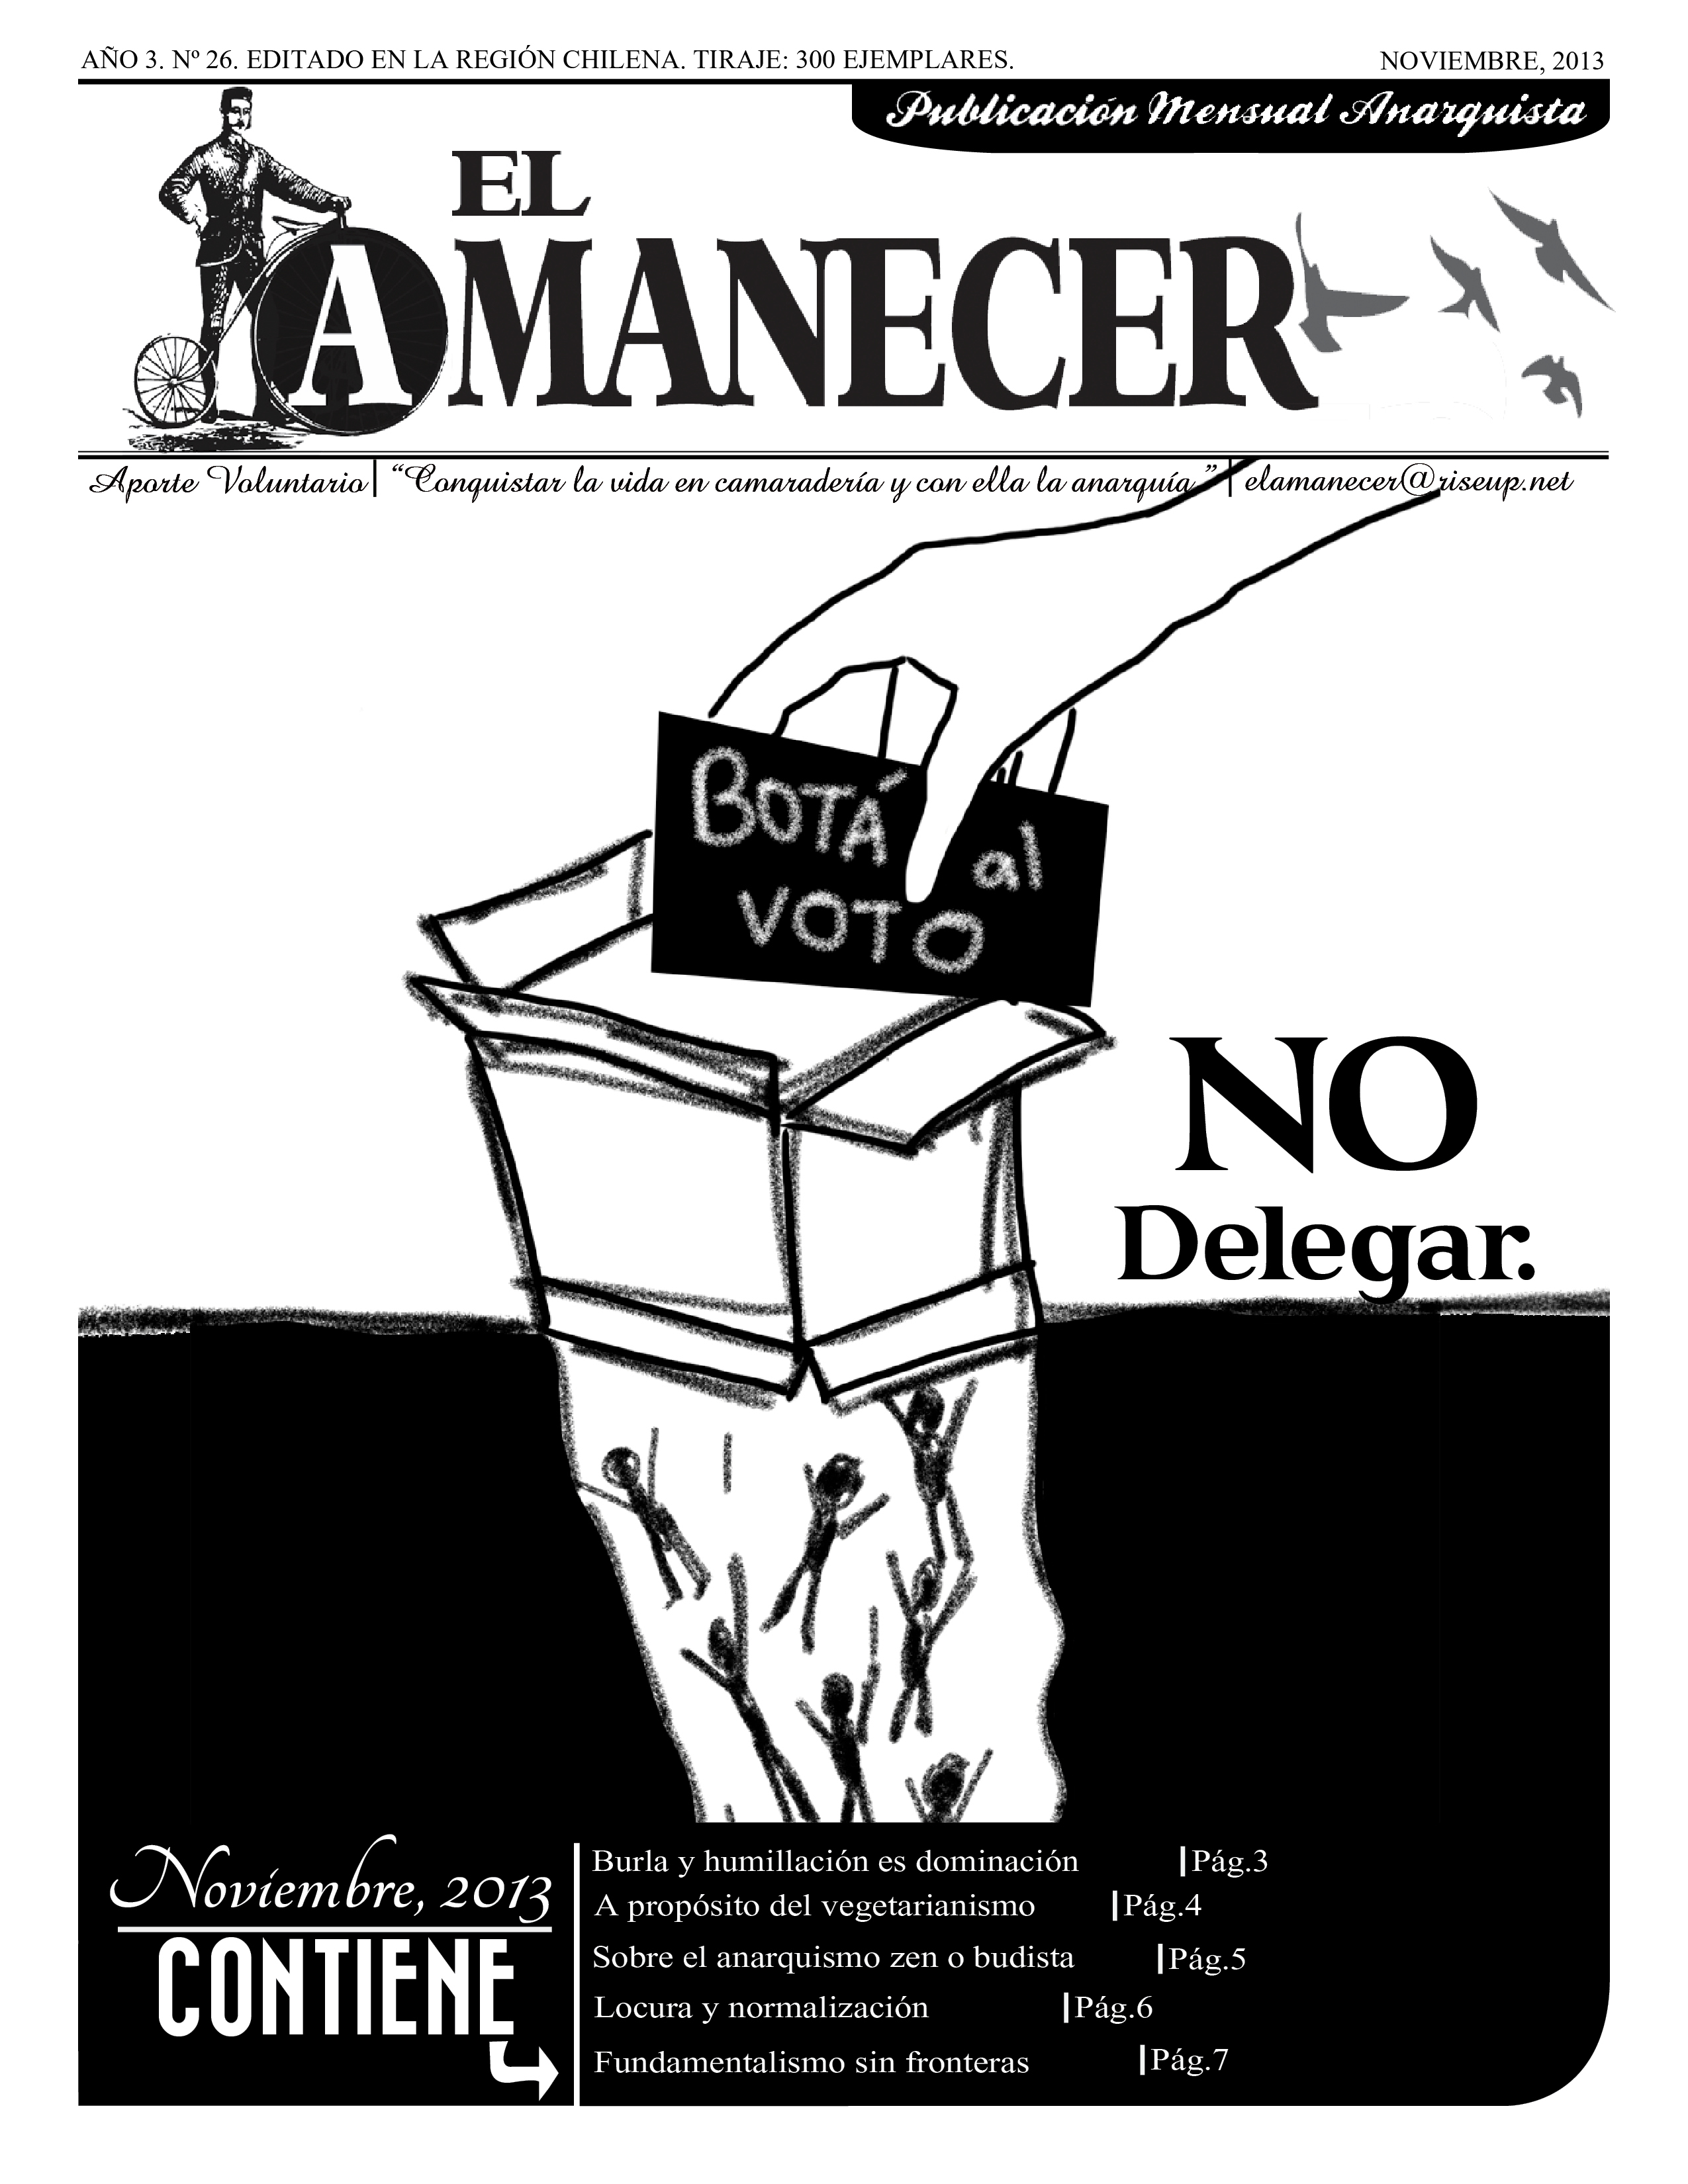 Portada del Periodico anarquista El Amanecer, Noviembre 2013